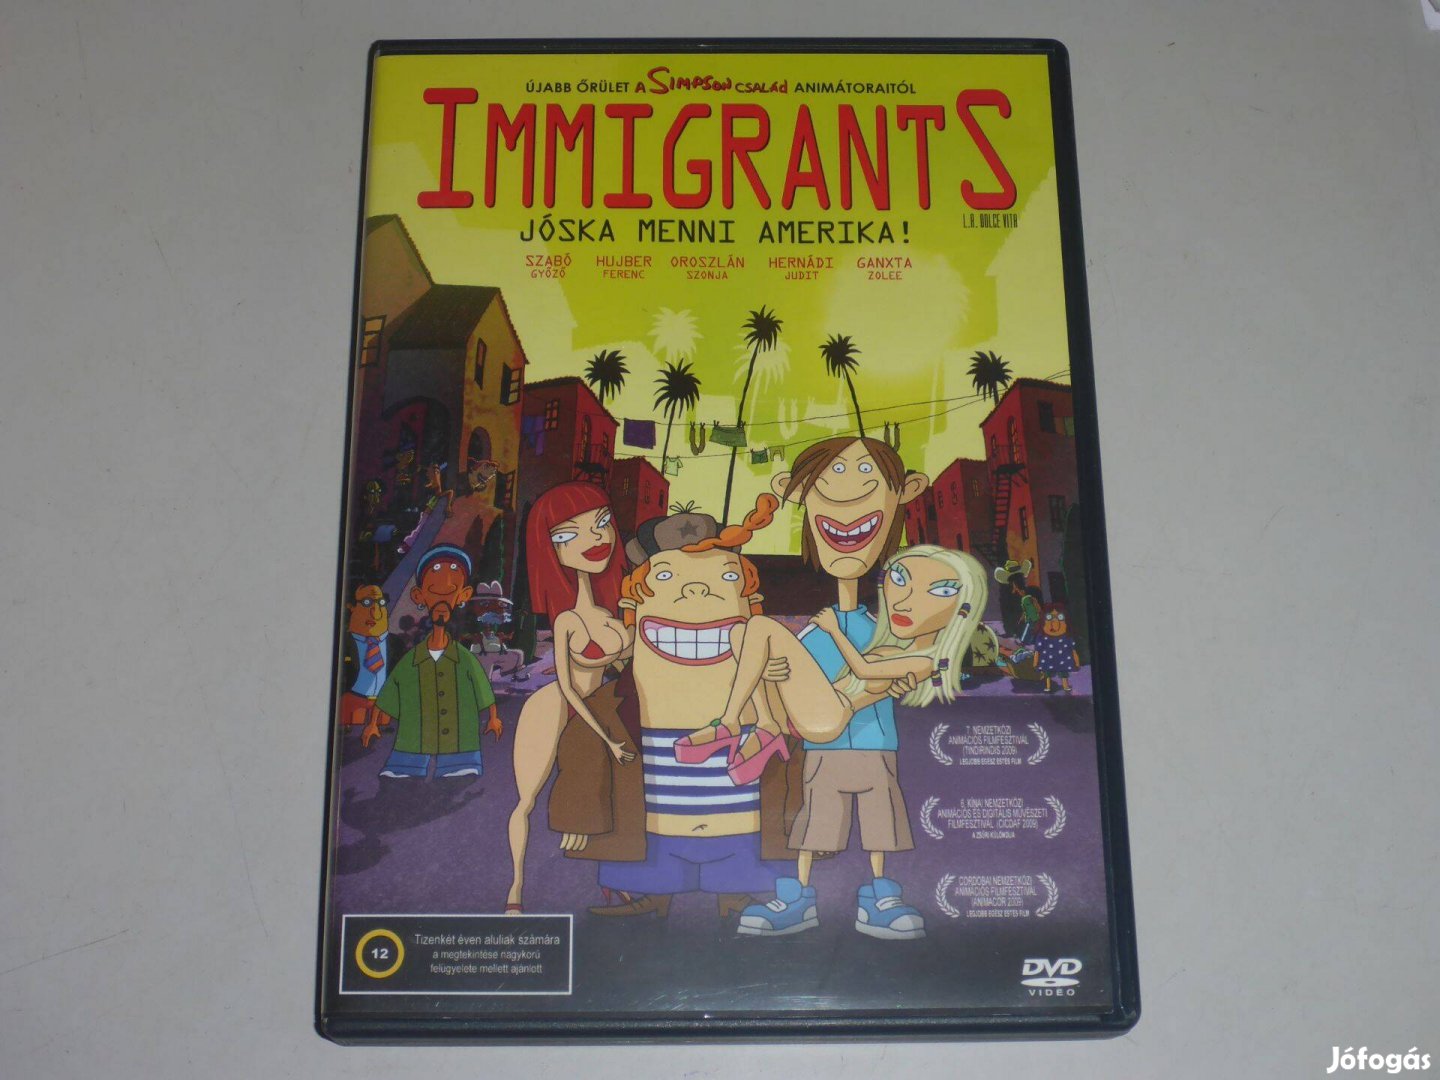 Immigrants - Jóska menni Amerika DVD film